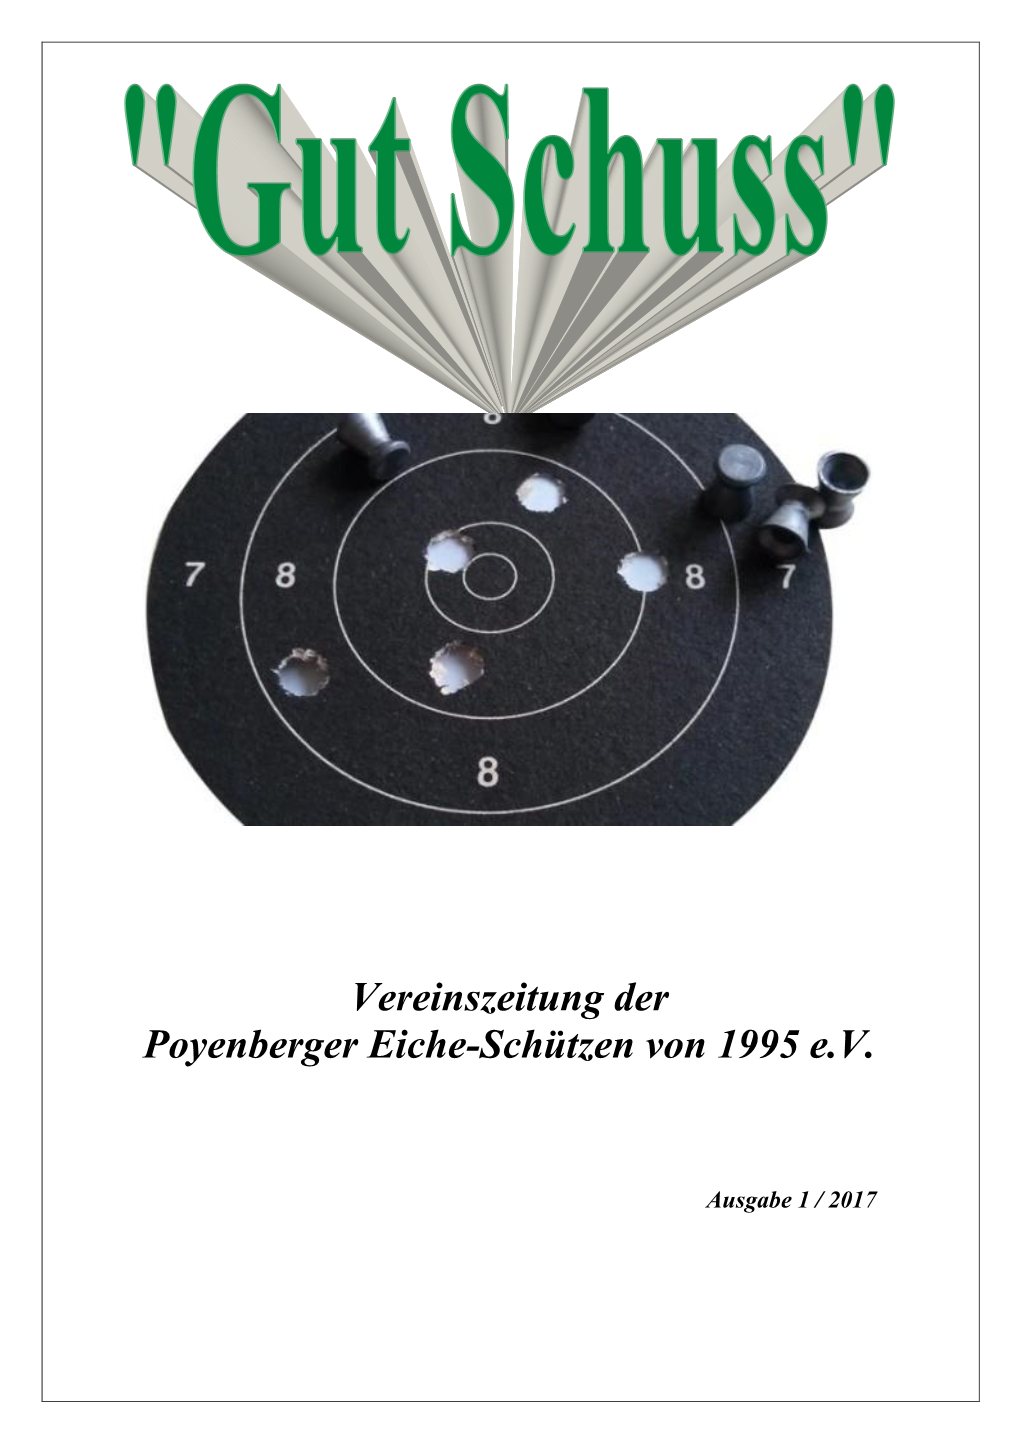 Vereinszeitung Der Poyenberger Eiche-Schützen Von 1995 E.V